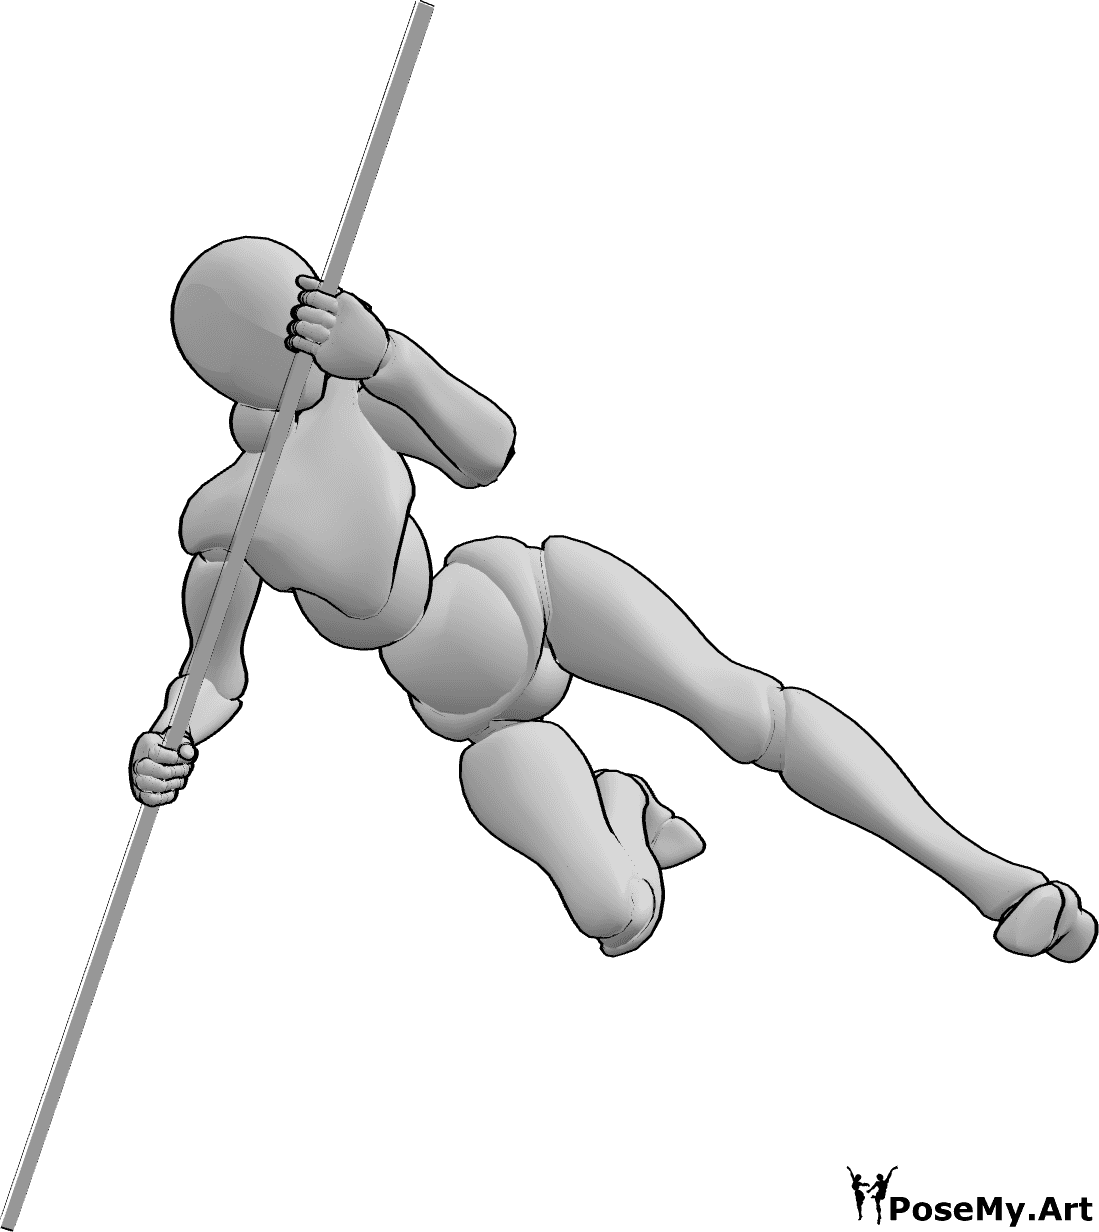 Posen-Referenz- Weibliche Sprünge Pose - Frau springt hoch und kickt, während sie sich auf den Stab stützt